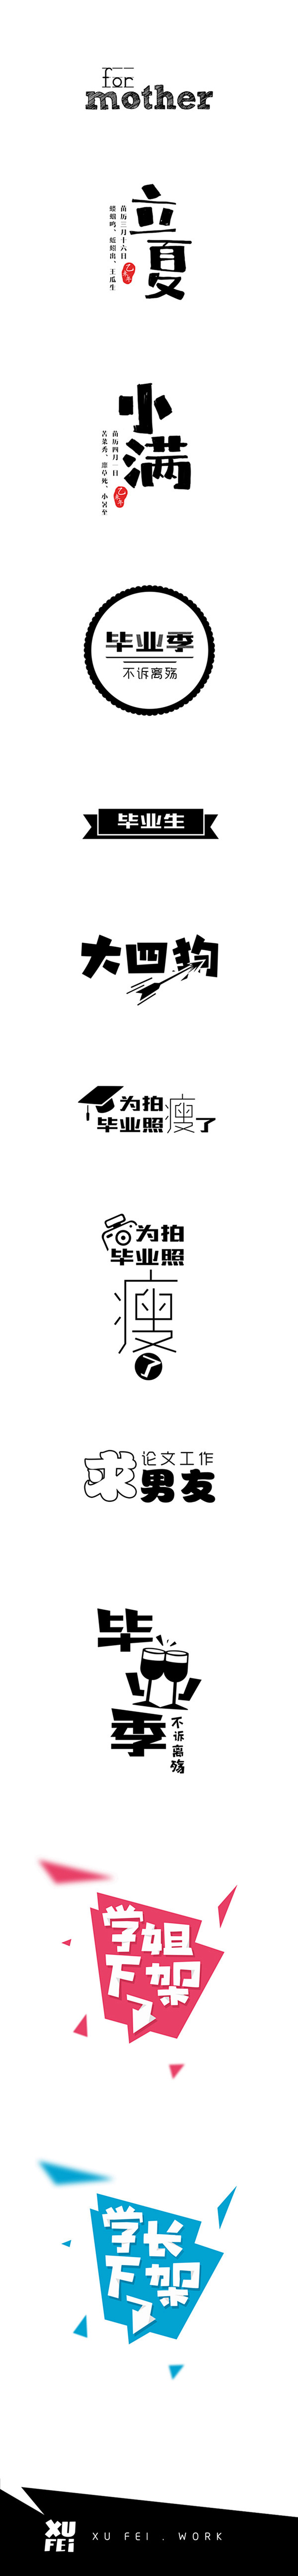 2015毕业季贴纸合集第5“回”#字体设...